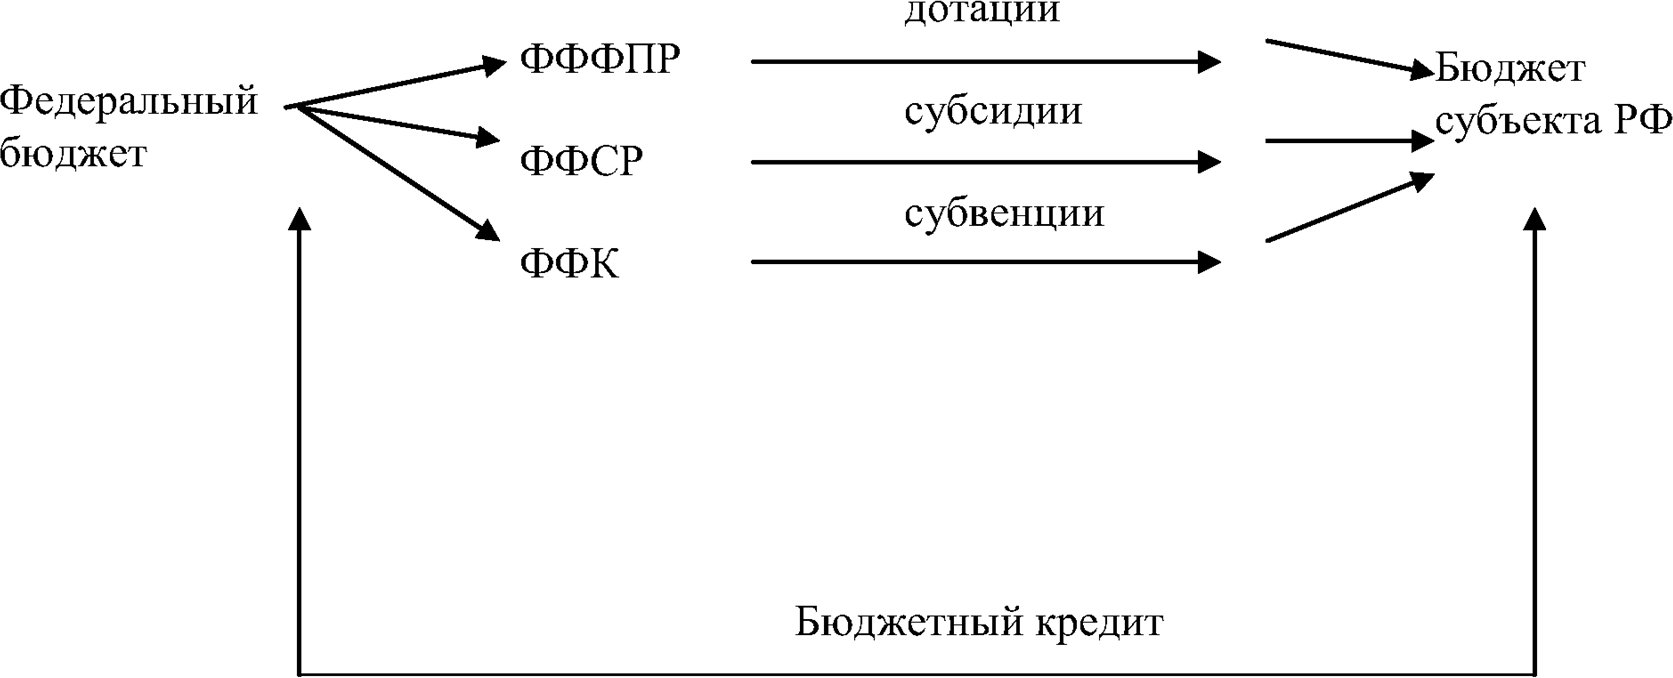 Межбюджетные трансферты: «Федеральный бюджет-бюджеты субъектов РФ»